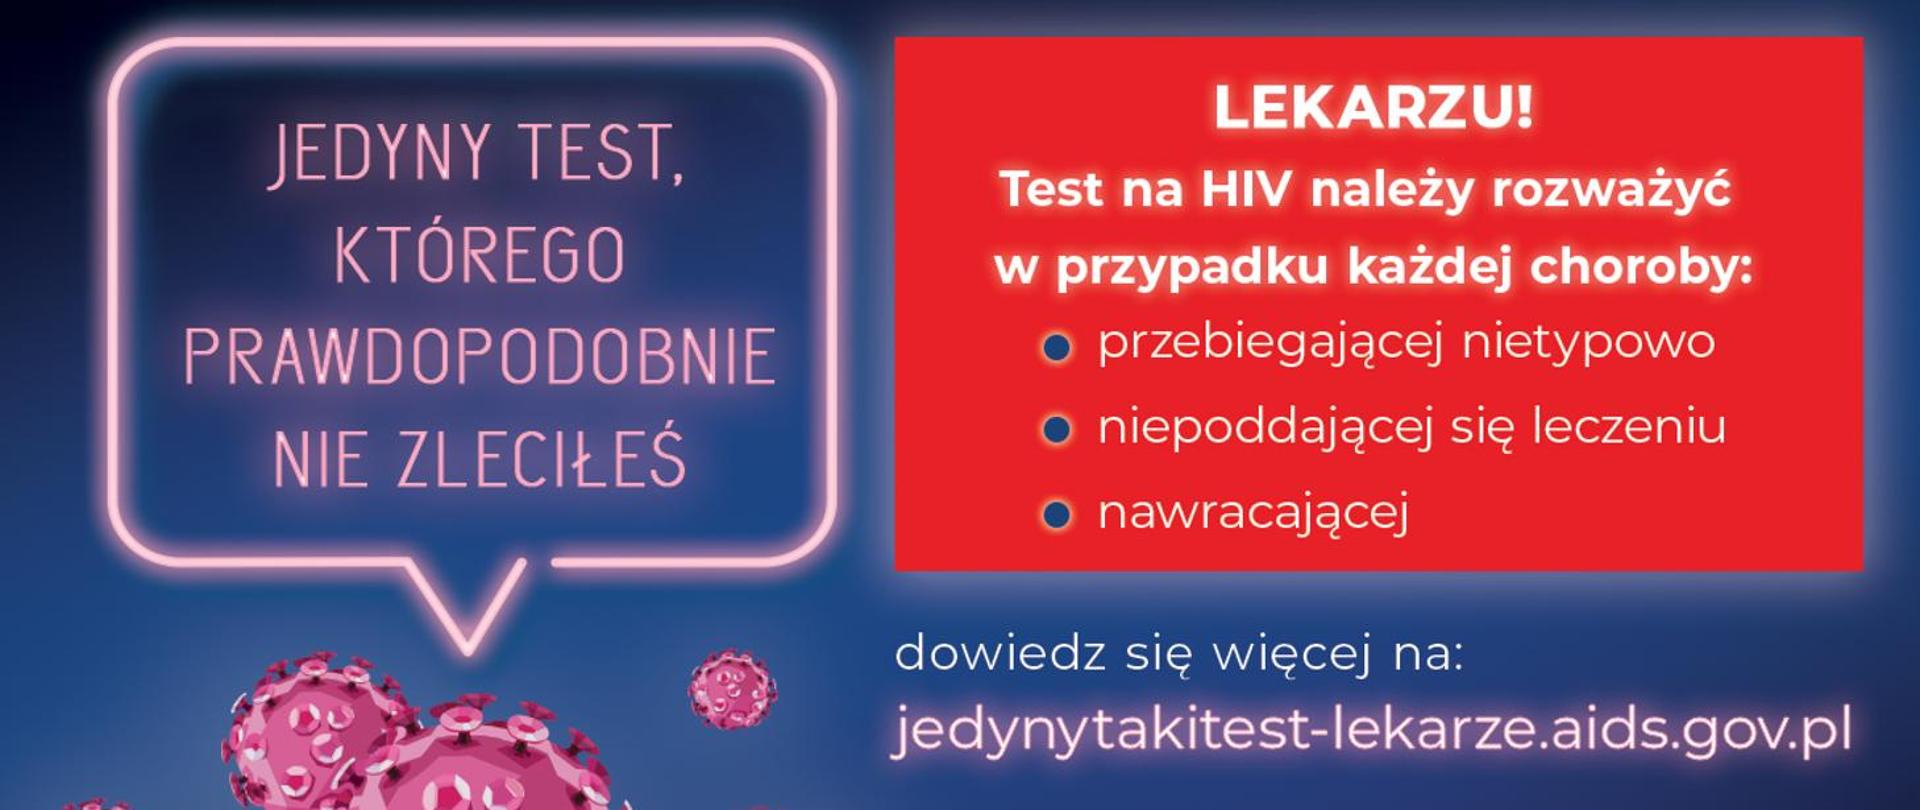 Kampania społeczna pod hasłem: „Jedyny taki test” (#jedynytakitest), której celem jest przede wszystkim popularyzacja wczesnej diagnostyki w kierunku HIV.